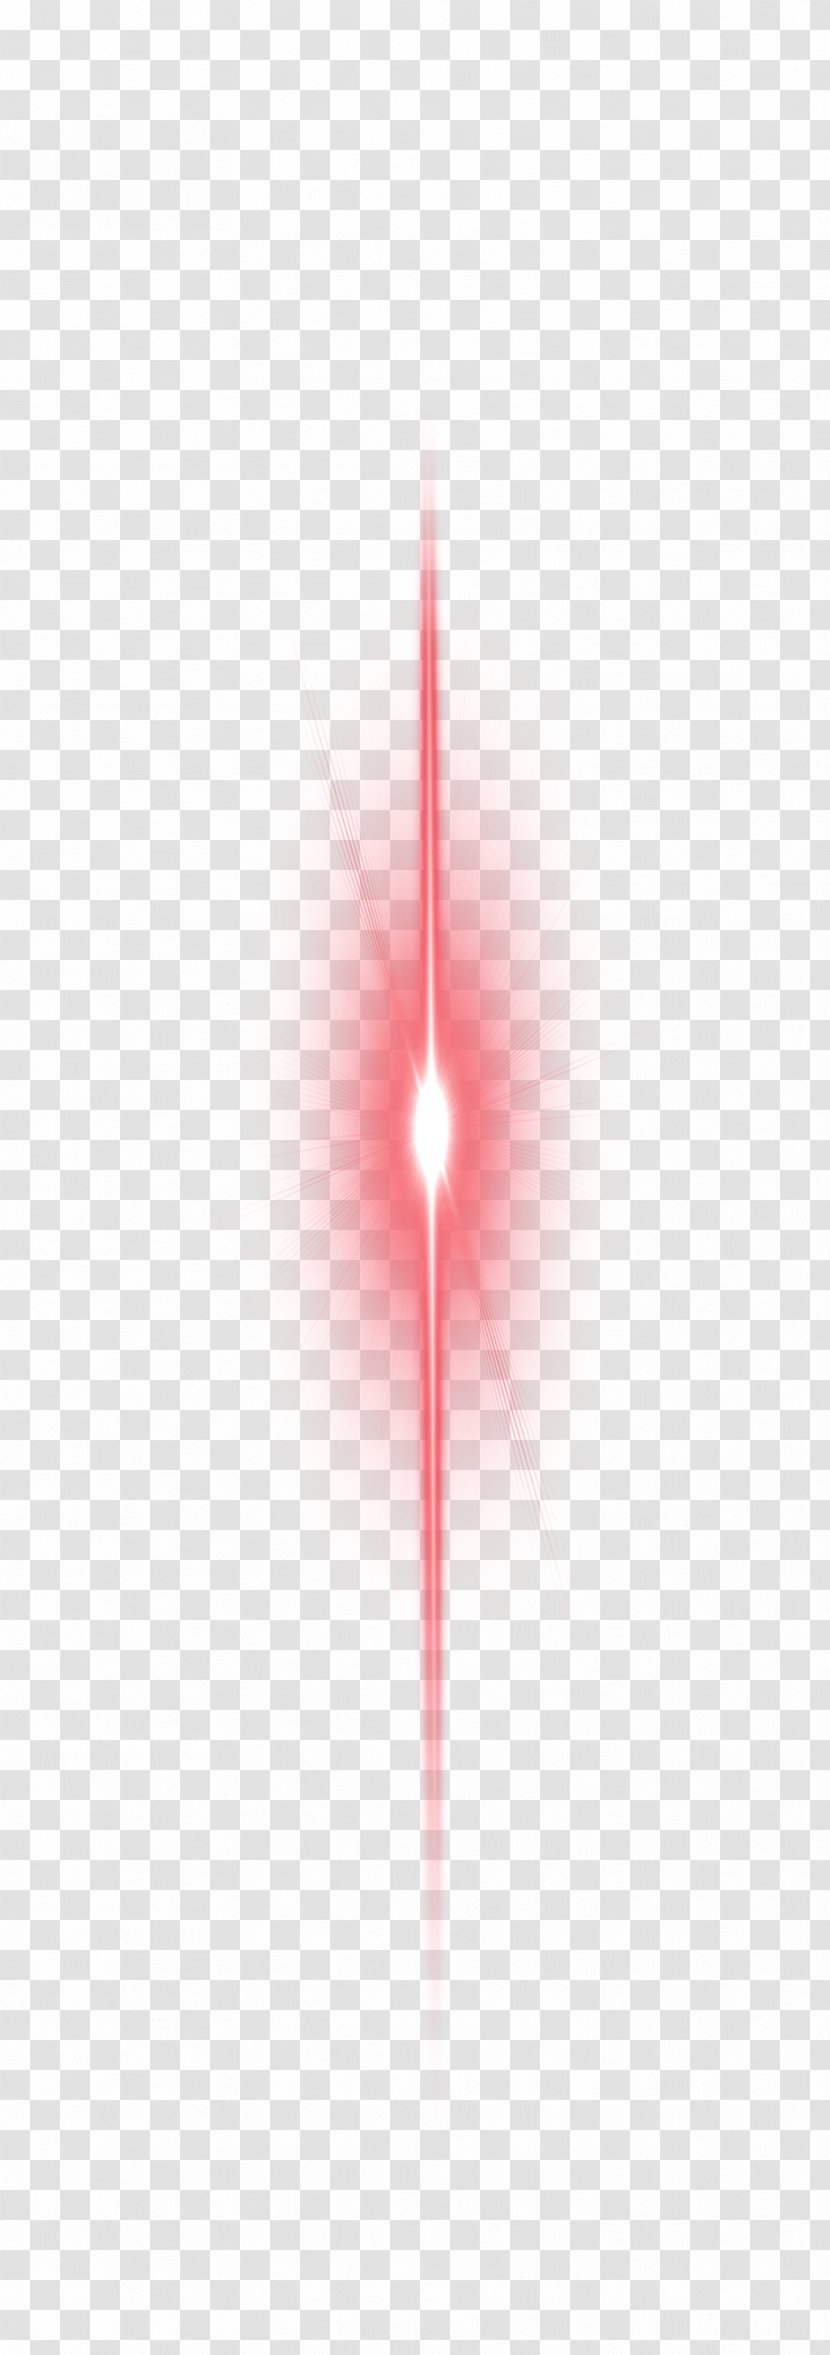 Red Light Effect Element - Google Images - Pink Transparent PNG